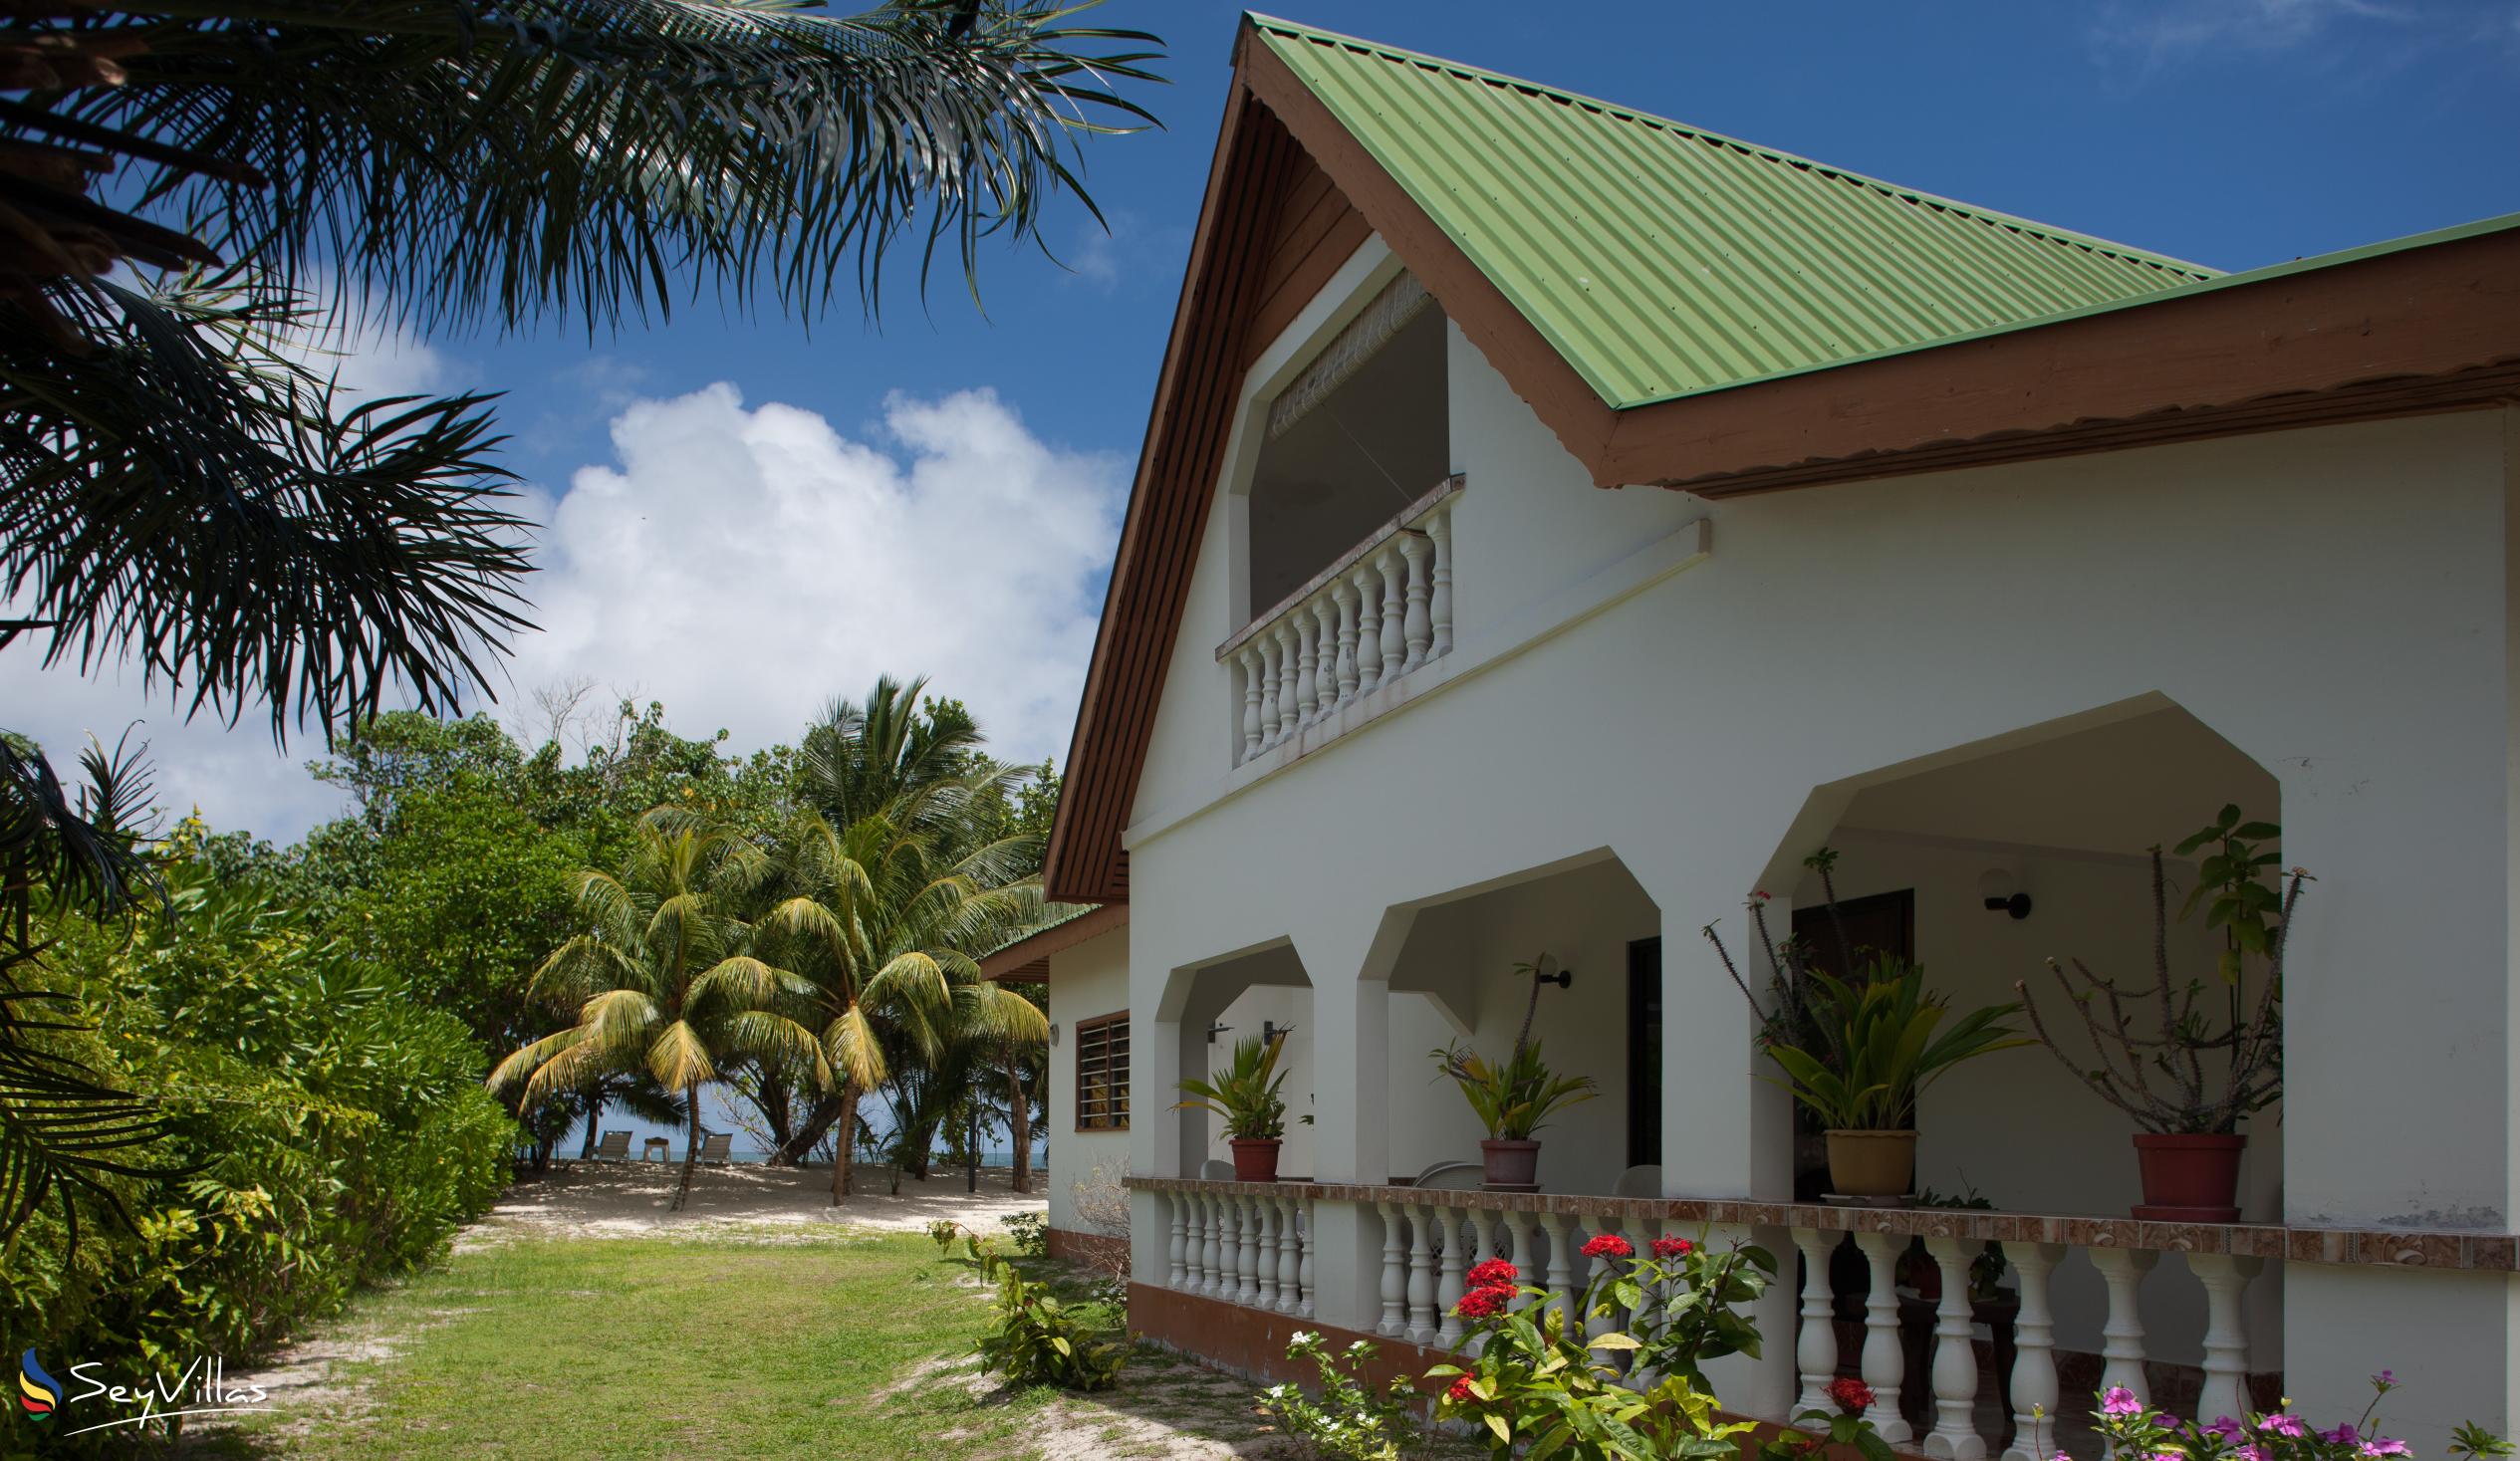 Foto 3: Villa Admiral - Aussenbereich - Praslin (Seychellen)